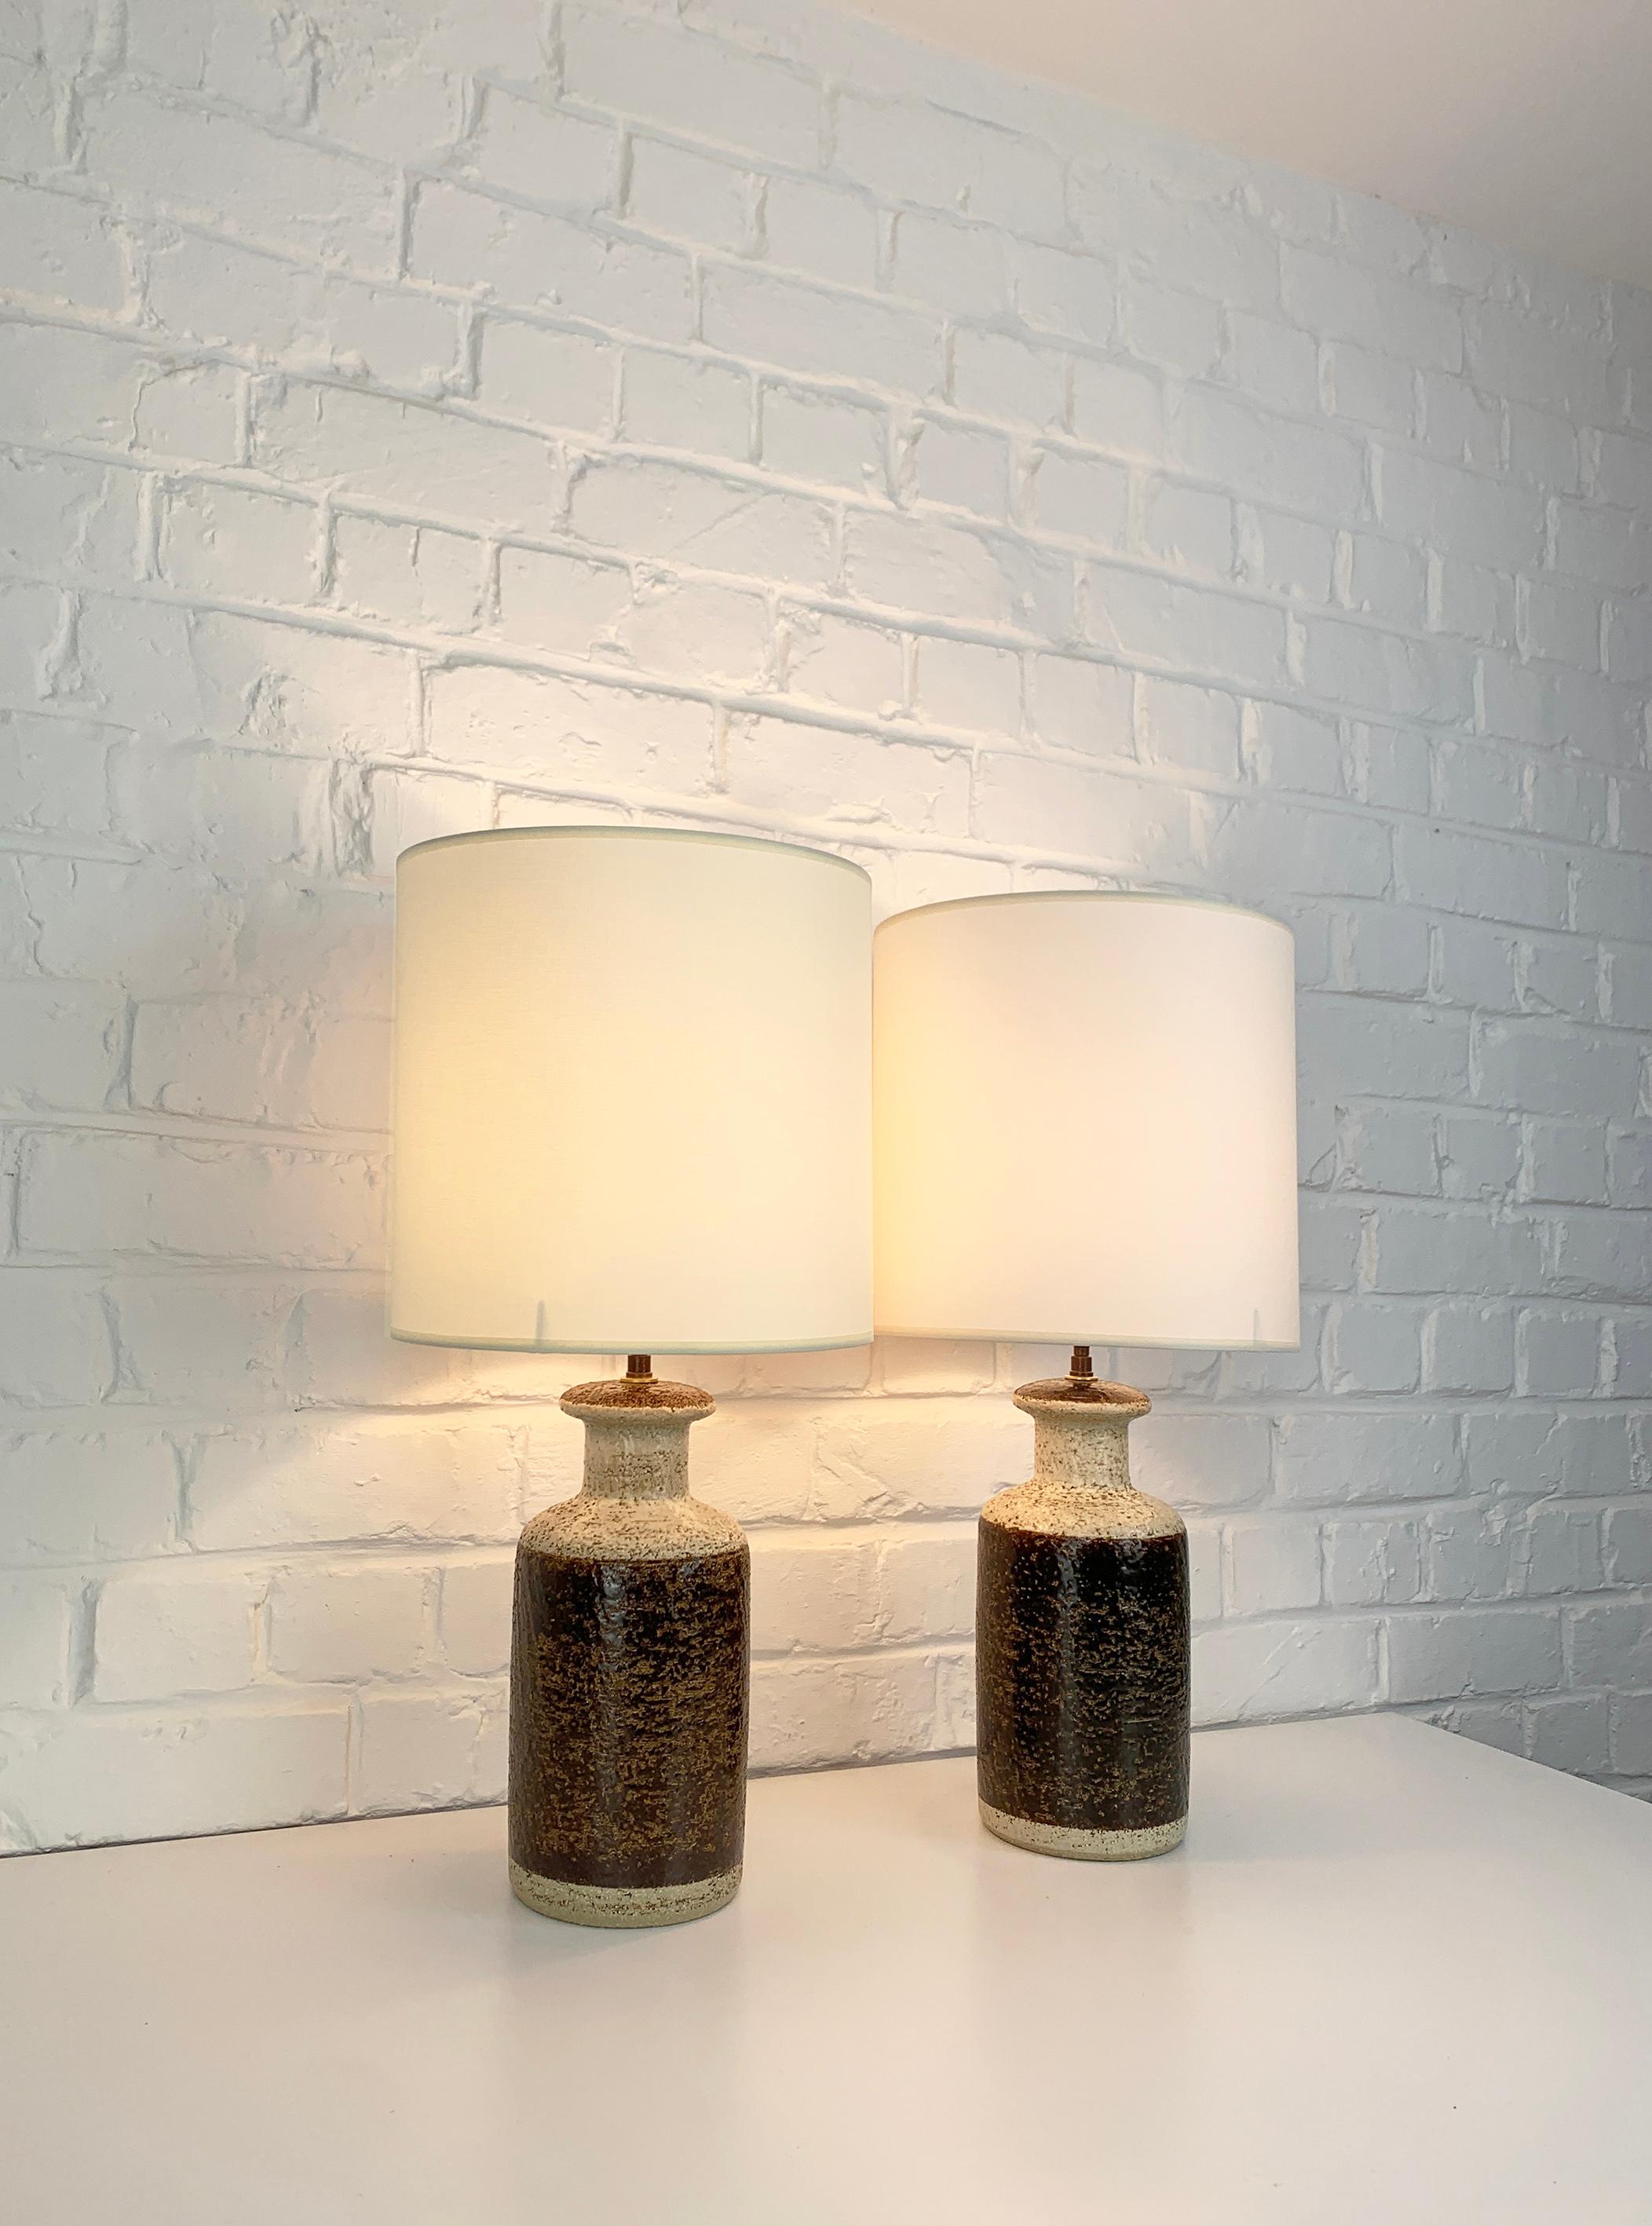 Zwei dänische Steingut-Tischlampen aus der Mitte des Jahrhunderts aus den 1970er Jahren, Design von Svend Aage Jensen. 

Skulpturale Lampenfüße aus Schamotte-Ton mit erdfarbener Glasur, schokoladenbraun und beigefarben. Diese Lampen gibt es in drei